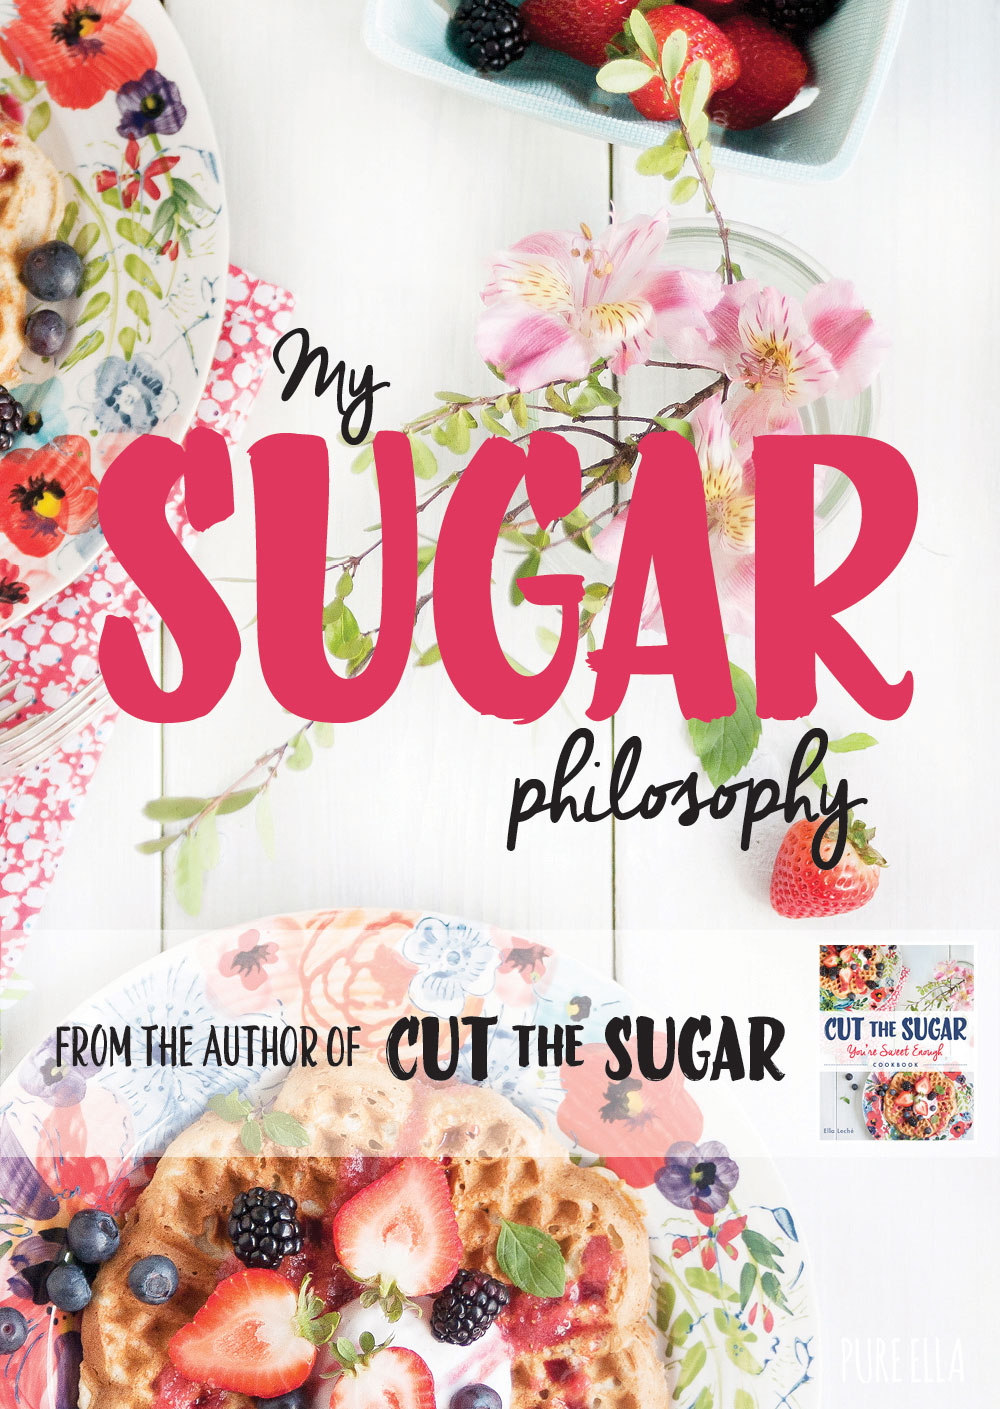 The-Cut-the-Sugar-Sugar-Philosophy